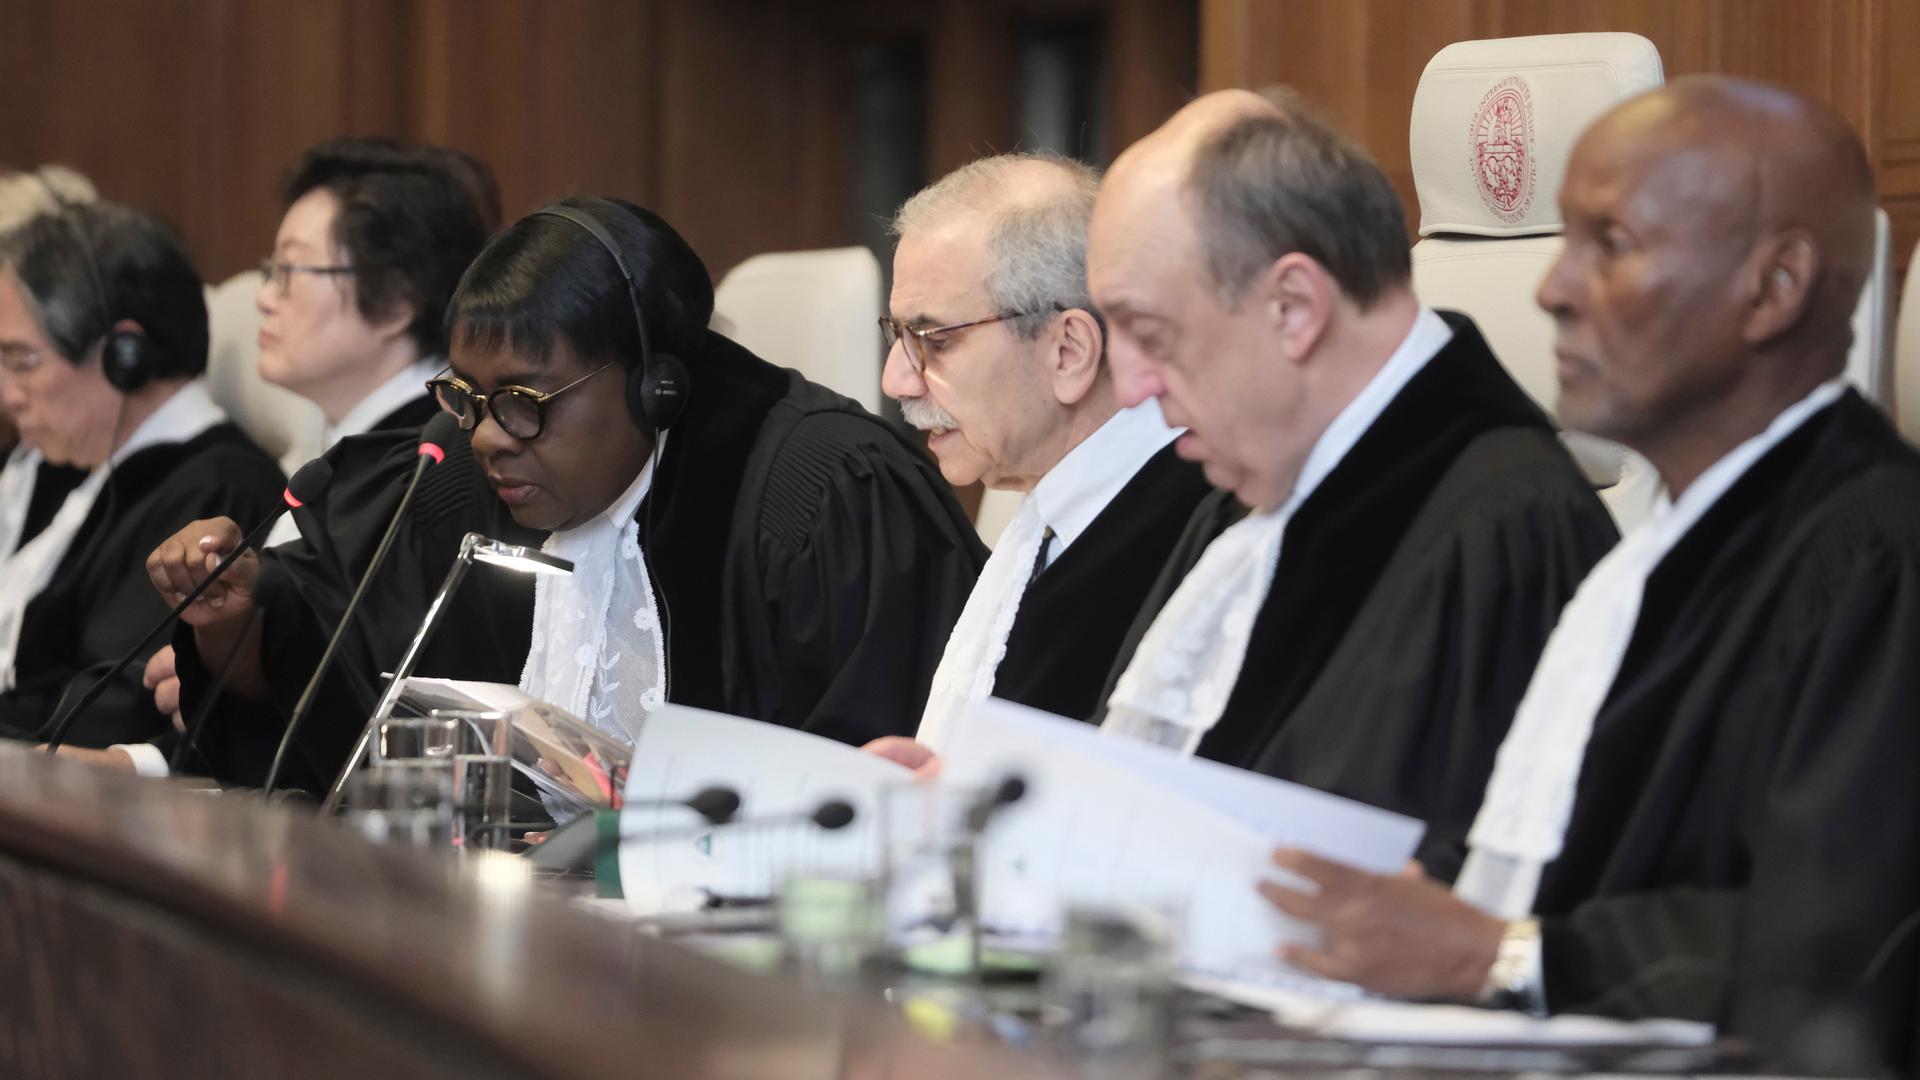 Den Haag: Richter Nawaf Salam (3.v.r) spricht zu Beginn einer zweitägigen Anhörung vor dem Internationalen Gerichtshof.